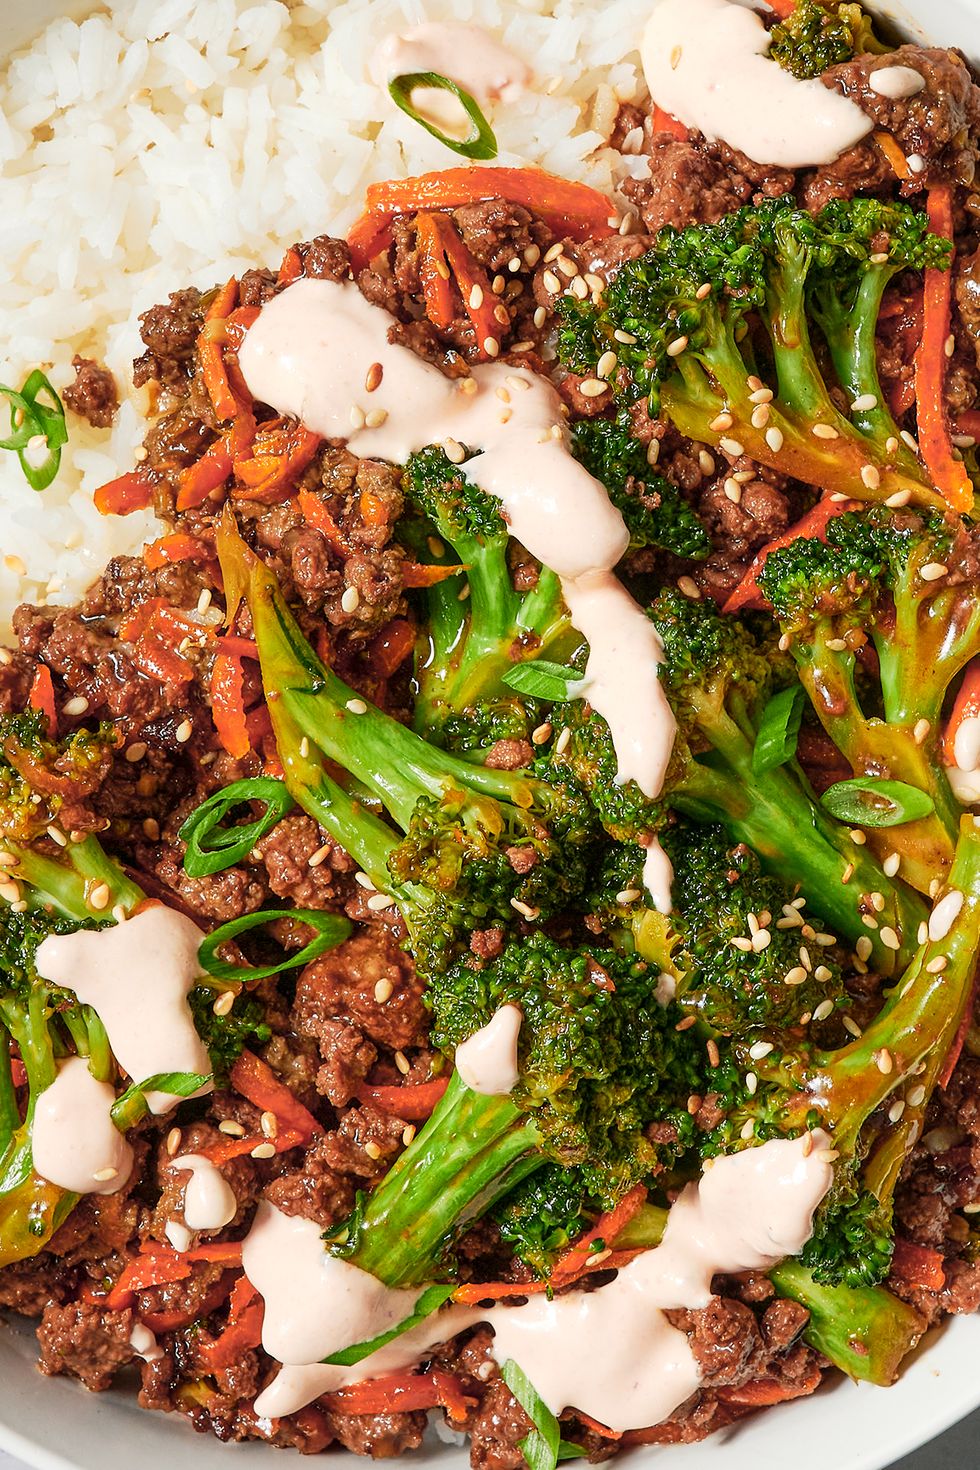 teriyaki based ground beef stir fry with broccoli